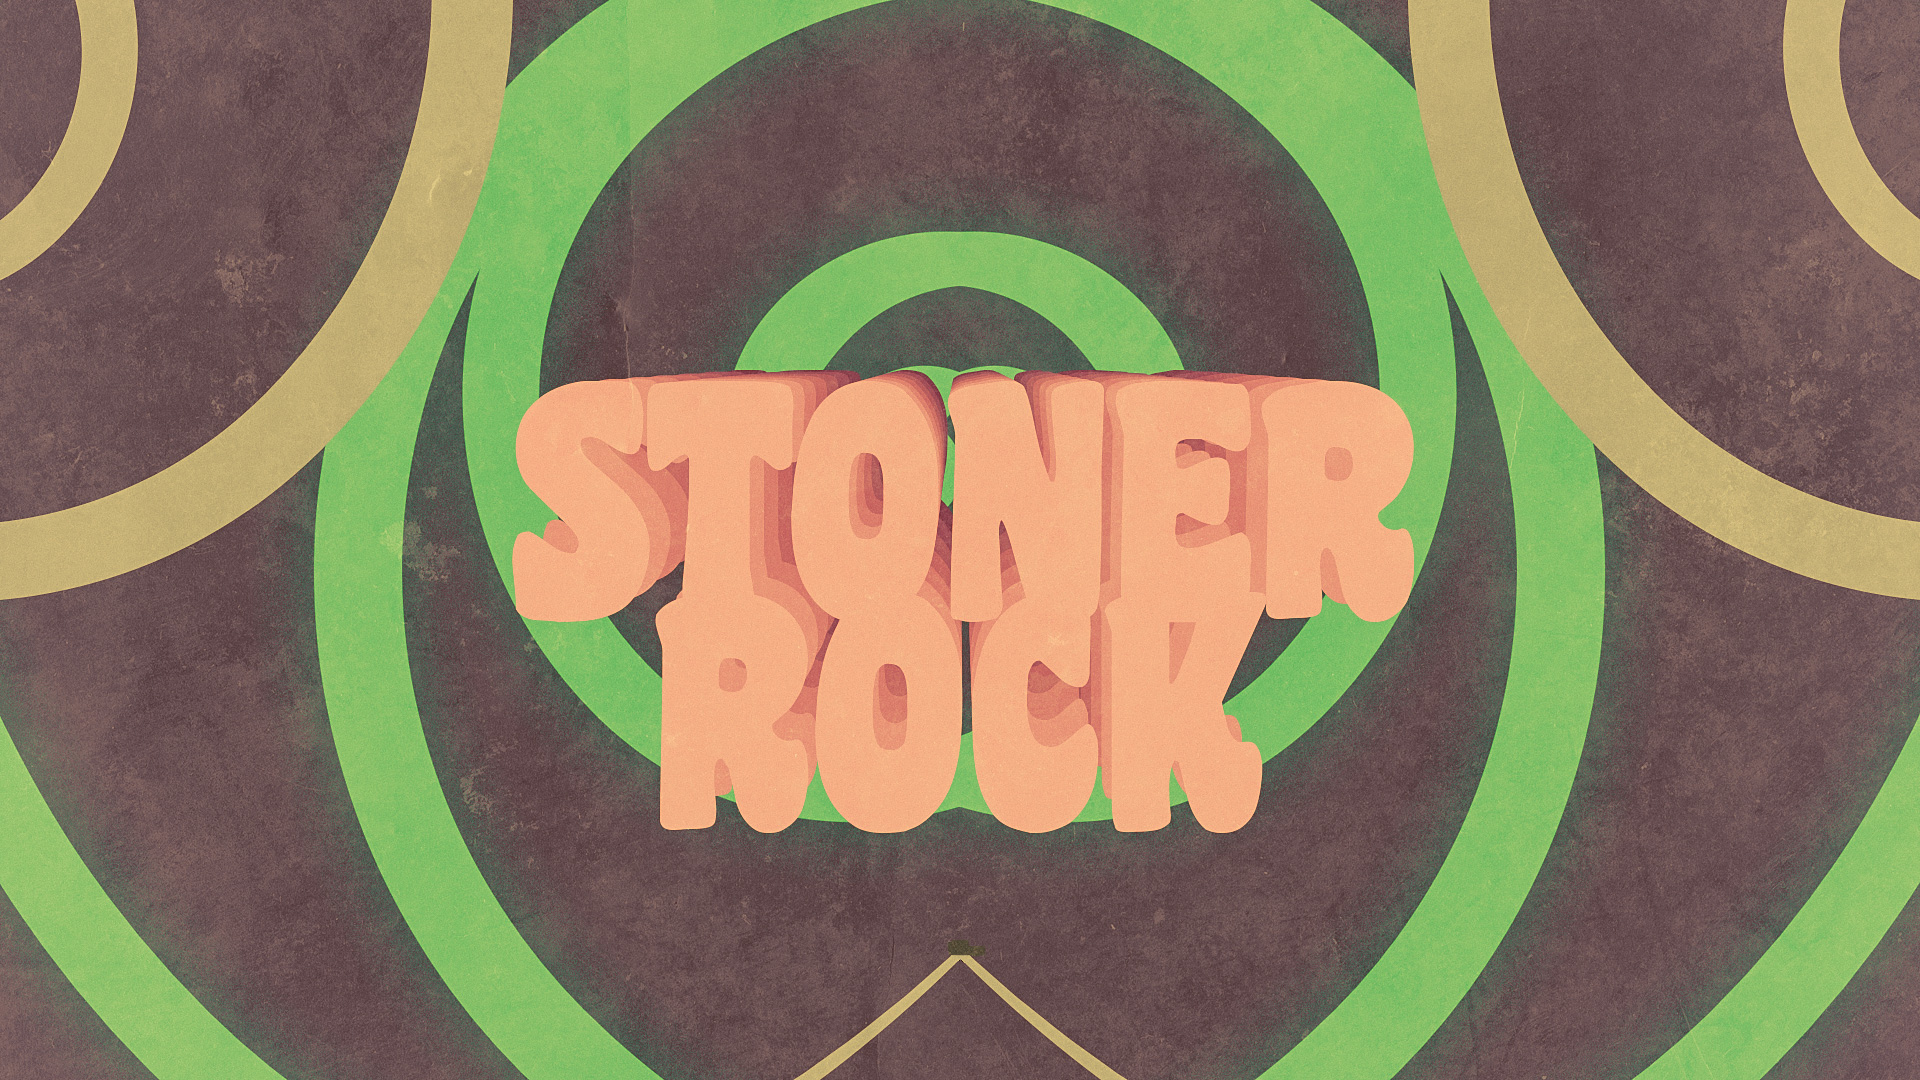 Meilleurs fonds d'écran Stoner Rock pour l'écran du téléphone